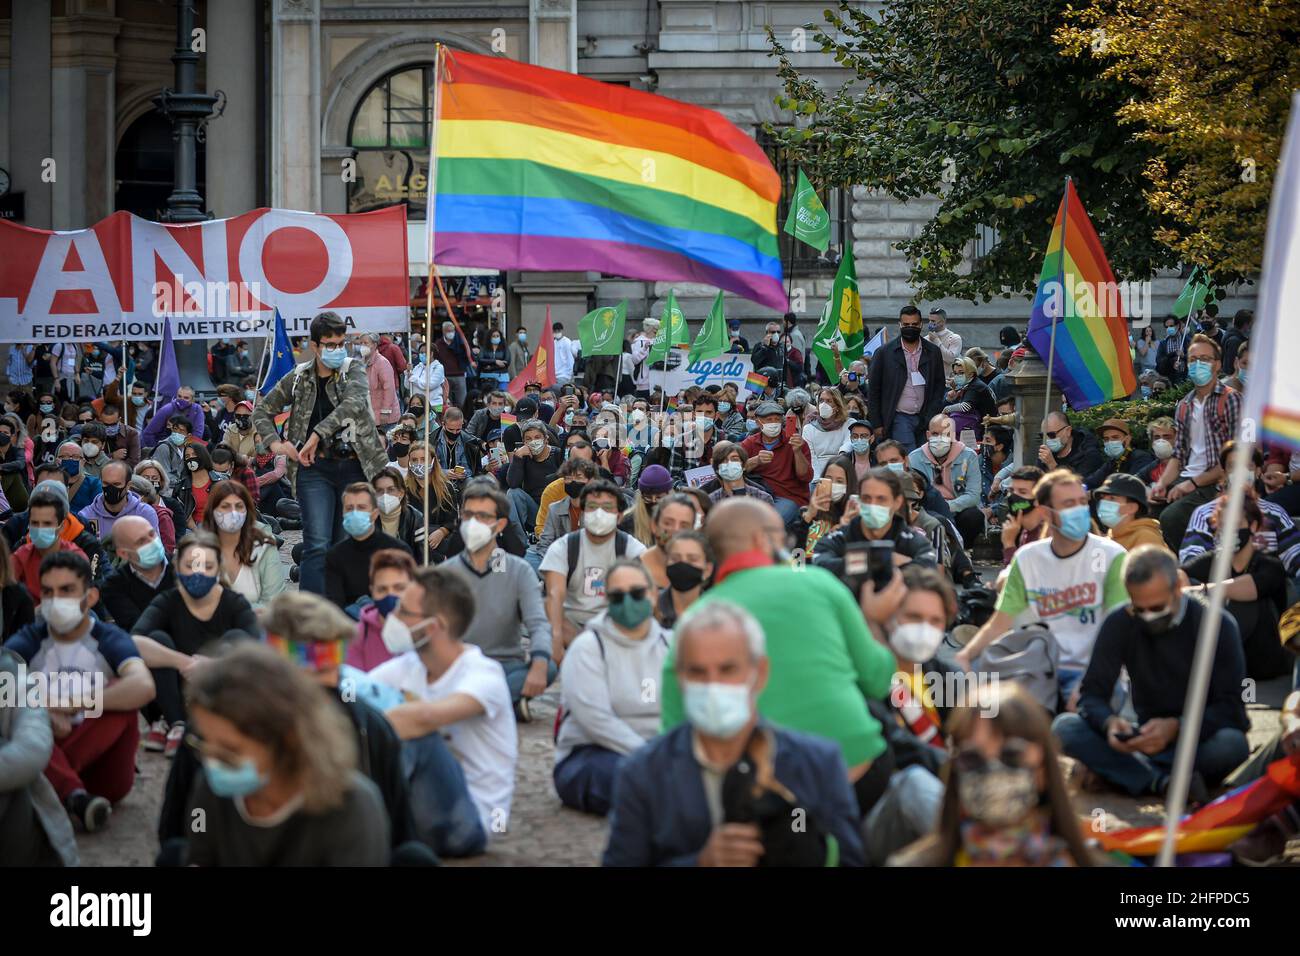 Claudio Furlan - LaPresse 10 Ottobre 2020 Milano (Italia) News ora Basta! Manifestazione organizzata dai movimenti lgbt per l'approvazione della legge Zan sulla transfobia Foto Stock